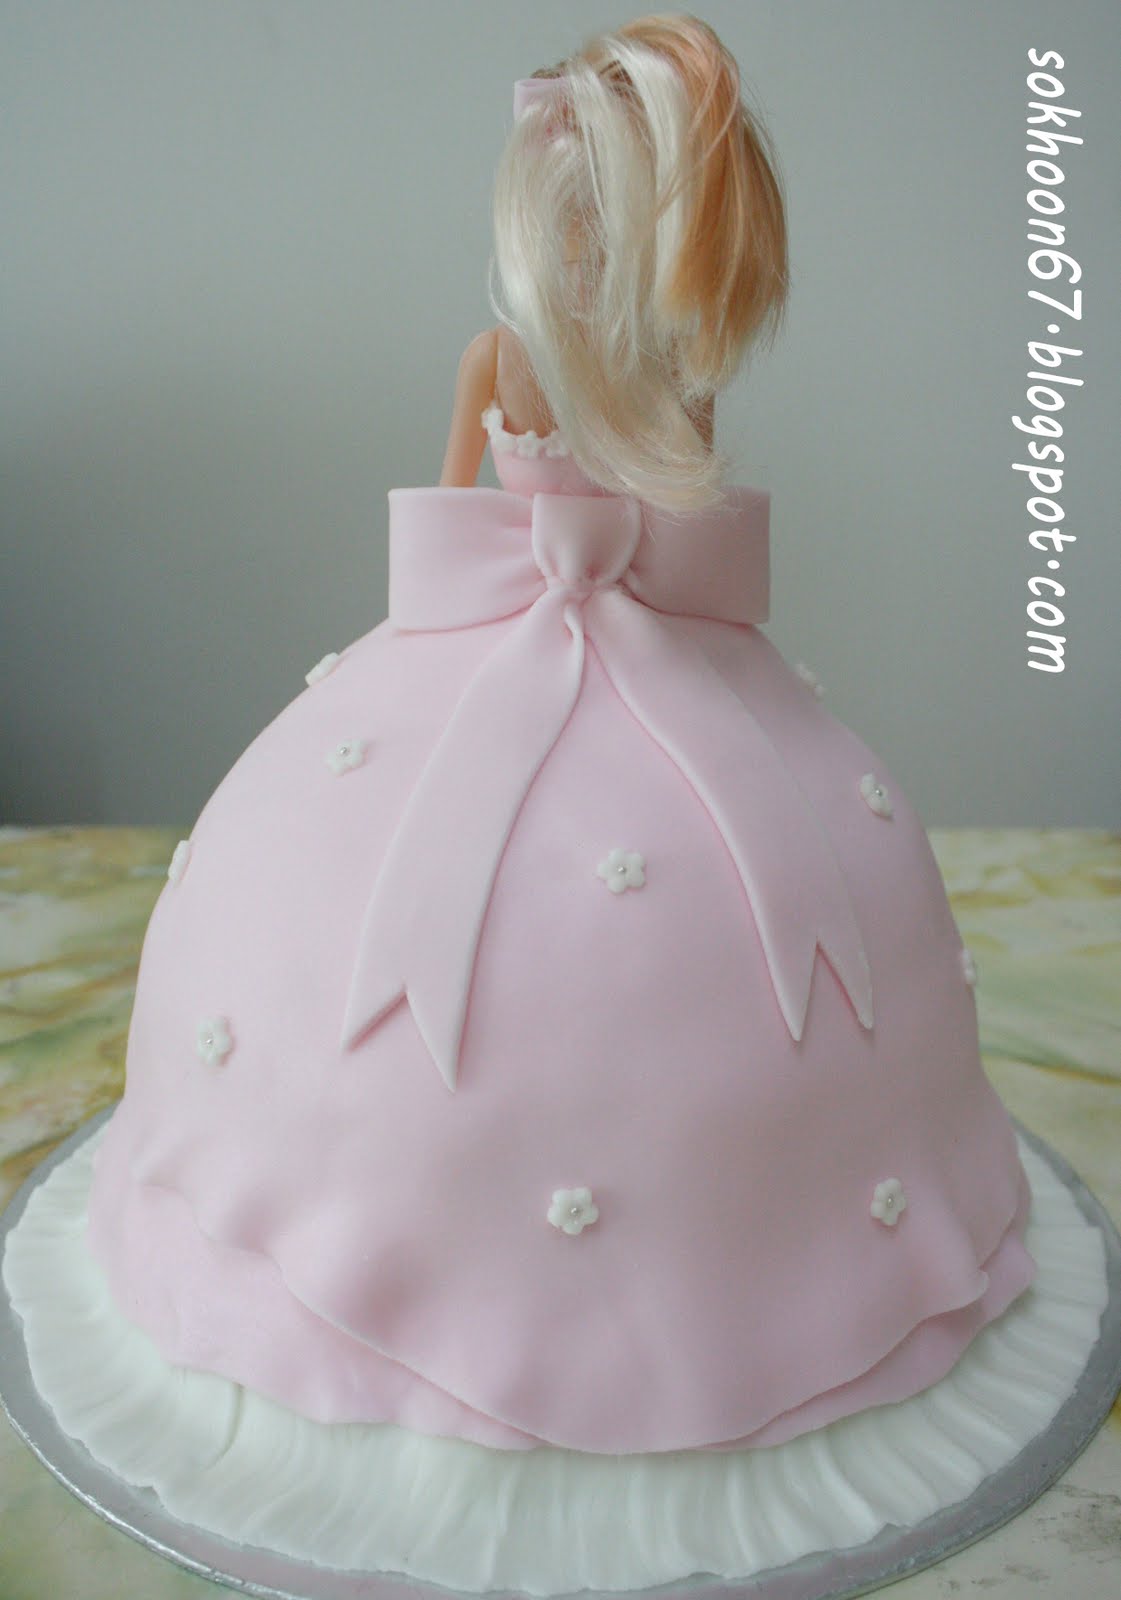 芭比娃娃玩偶题材蛋糕粉色 编辑类库存图片. 图片 包括有 女性, 主厨, 食物, 自创, 女孩, 有吸引力的 - 113229764